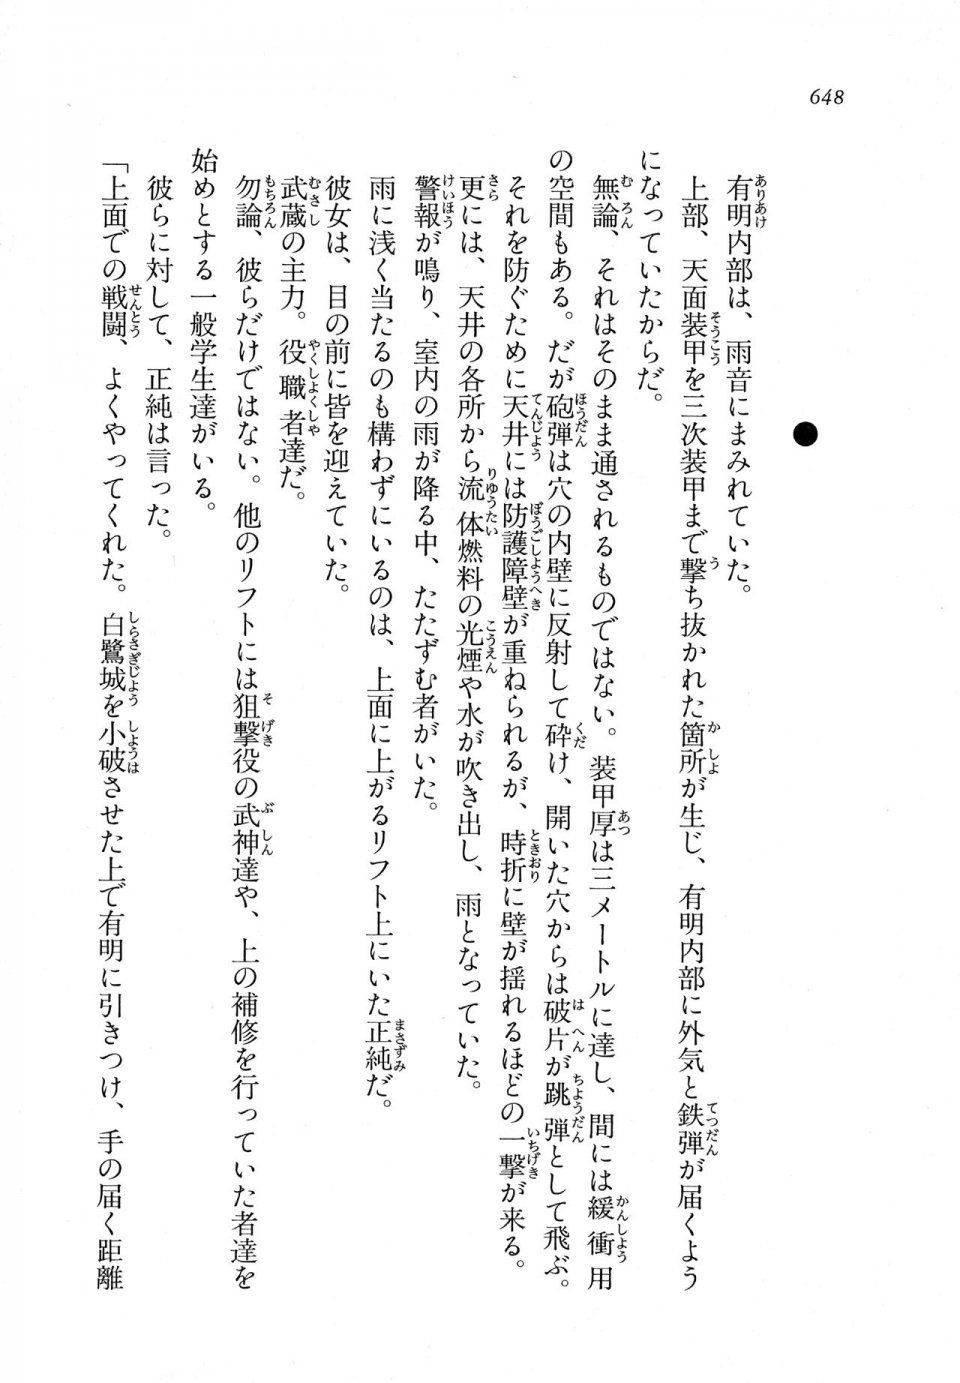 Kyoukai Senjou no Horizon LN Vol 11(5A) - Photo #648